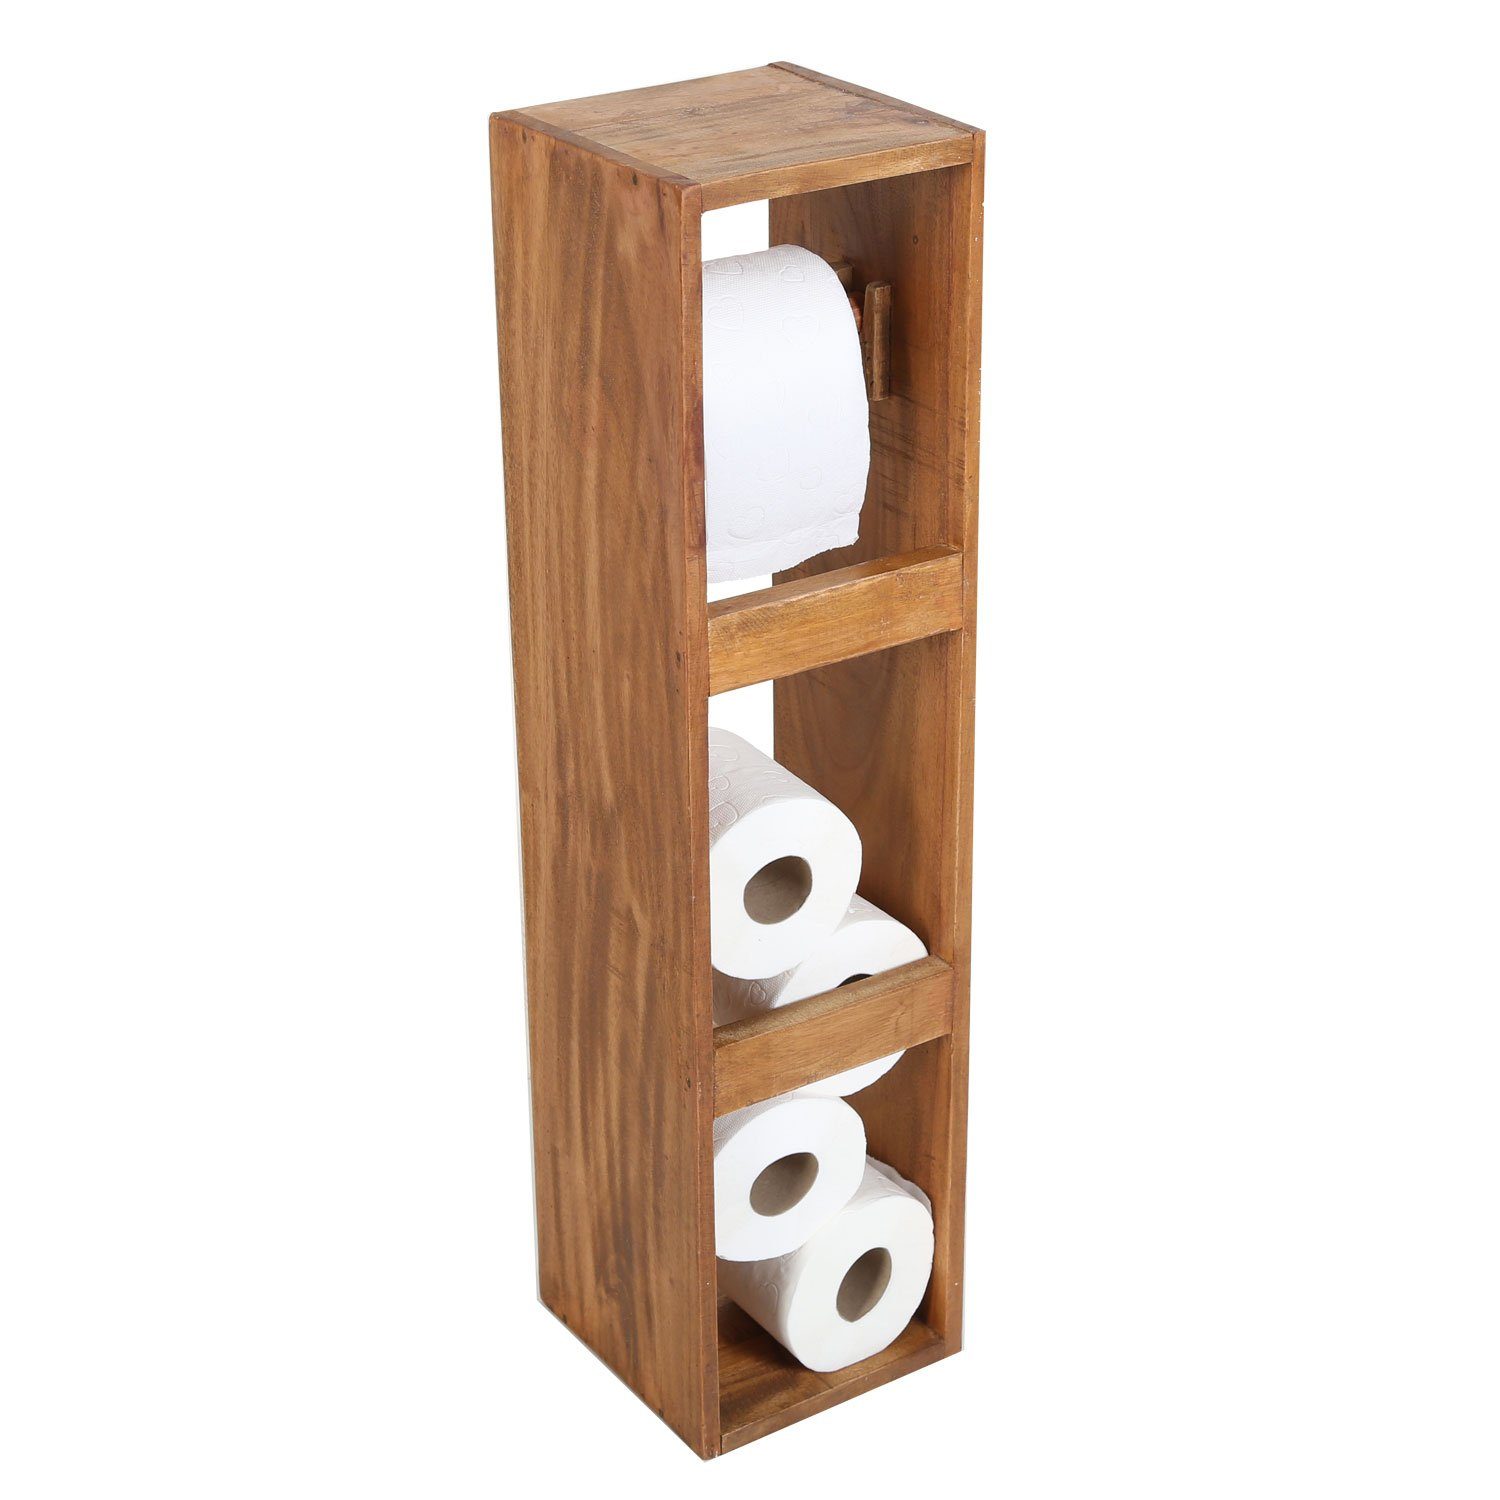 Casa Moro Toilettenpapierhalter Holz Toilettenpapierhalter ELISA Toilettenpapierständer, aus recyceltem Teak Holz gefertigt | Toilettenpapierhalter